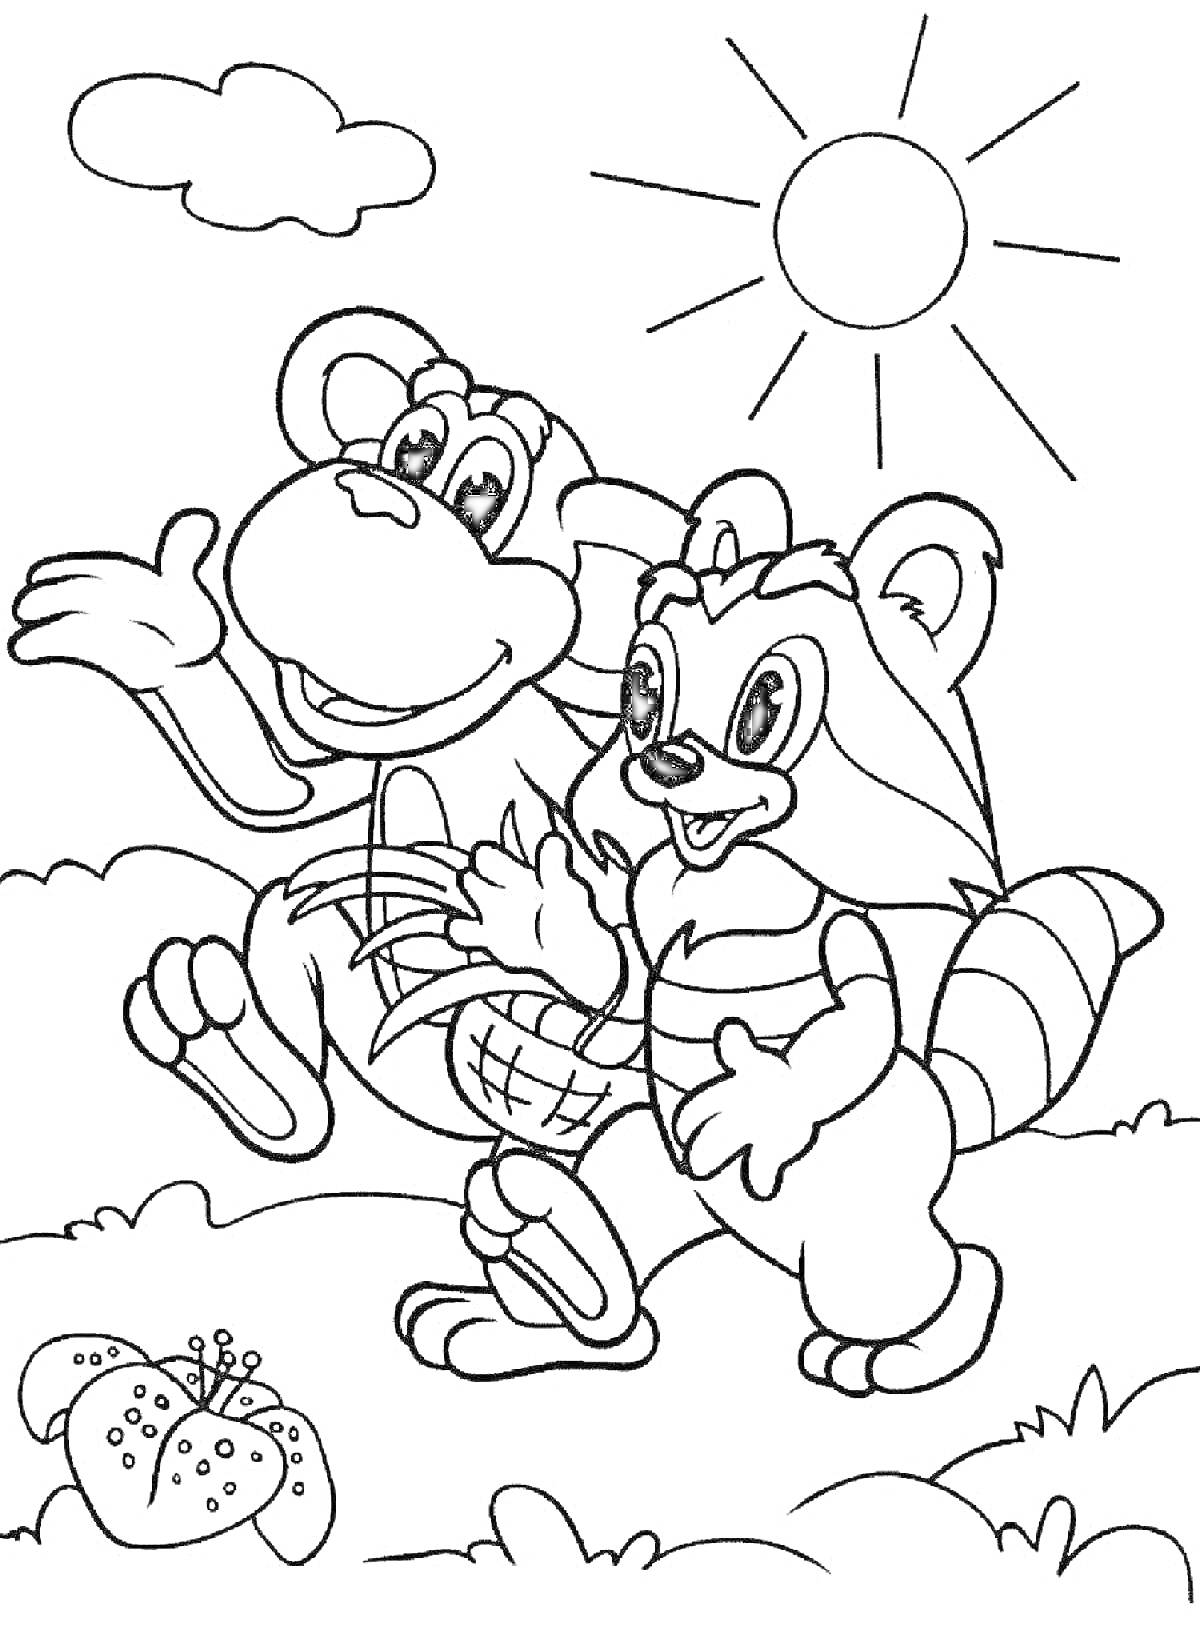 Раскраска Обезьяна и енот идут на пикник (солнечный день, корзинка, цветок, солнце, облака)